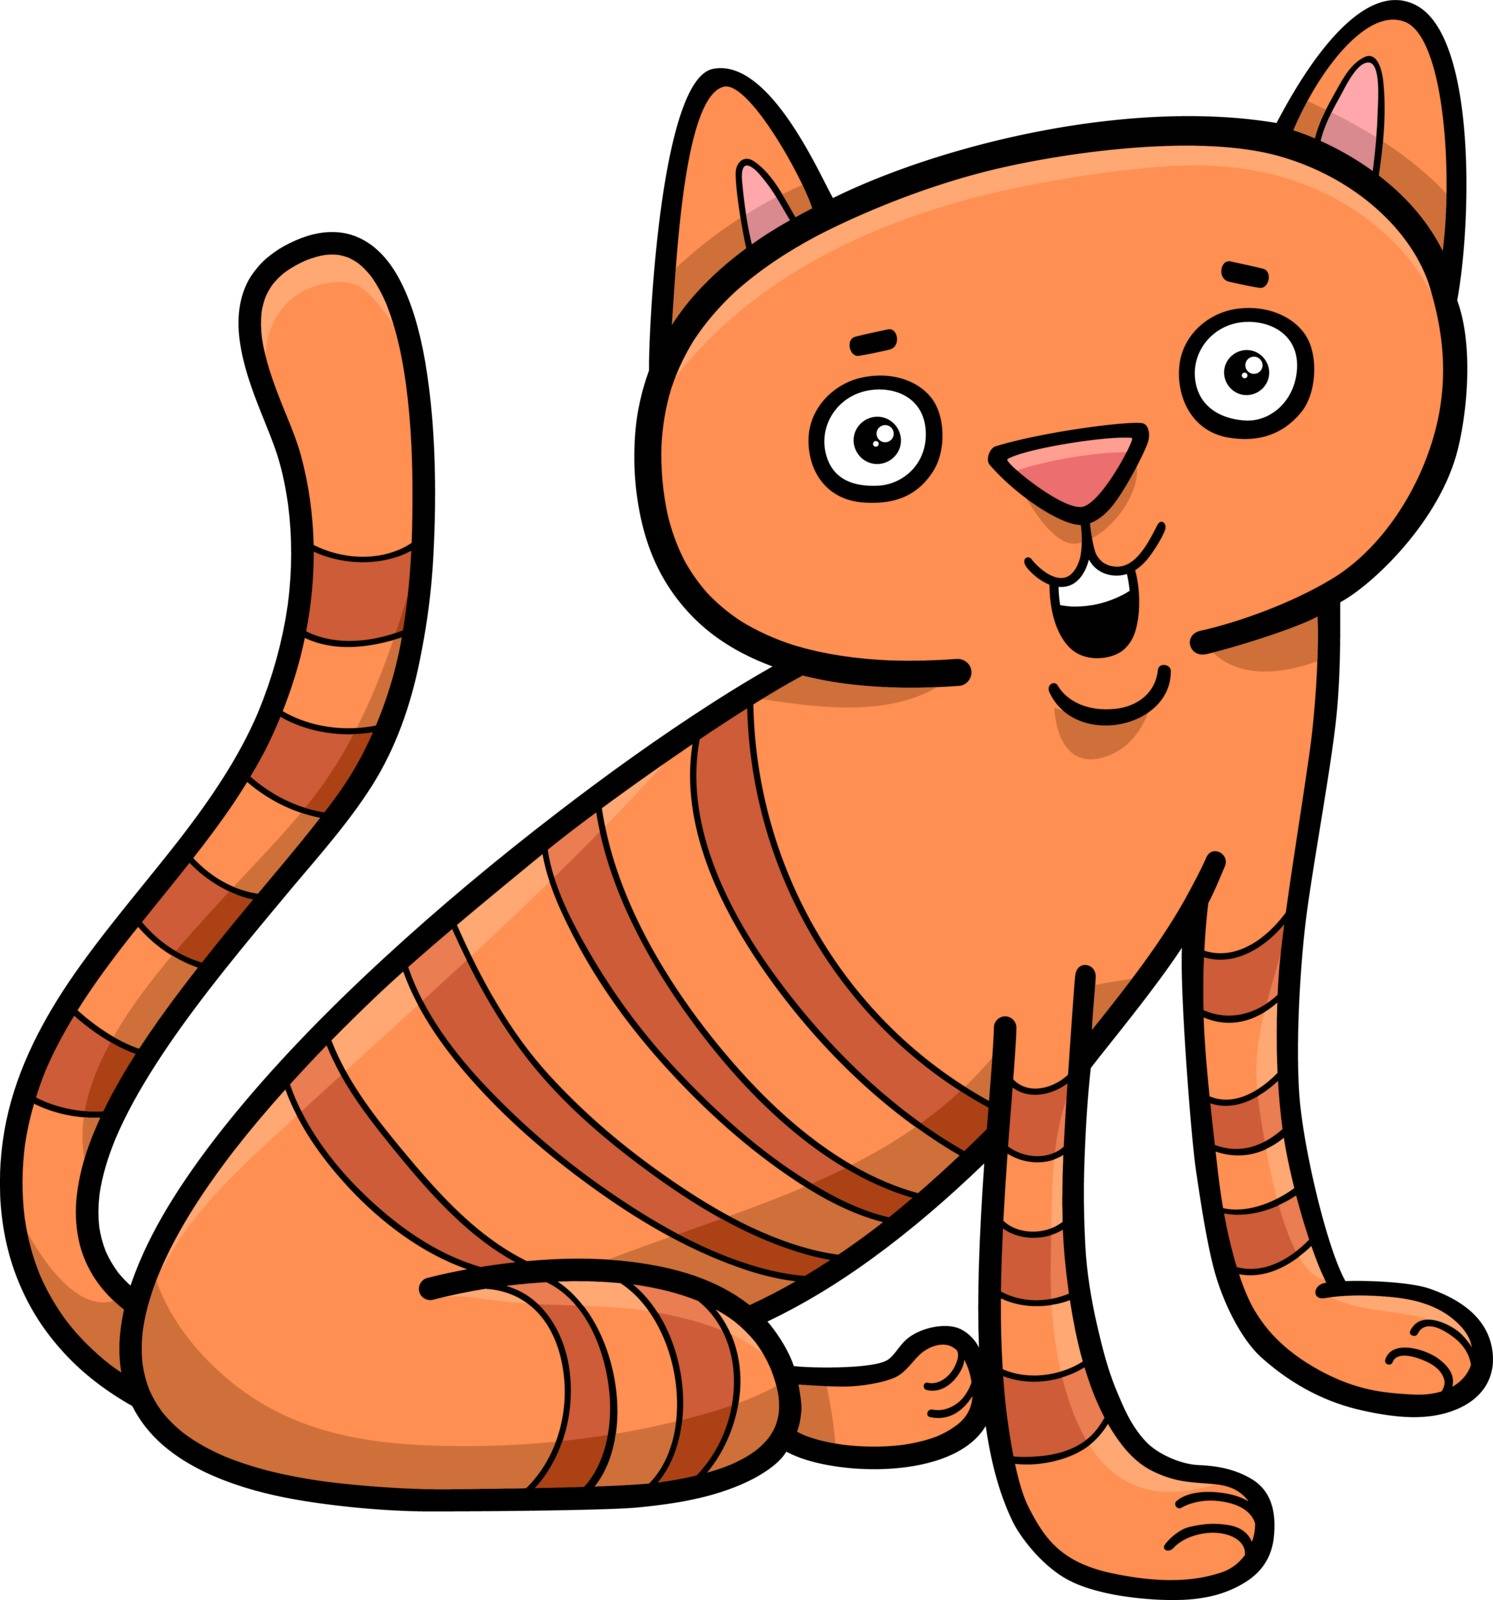 Cartoon Illustration of Cat or Kitten Animal Character